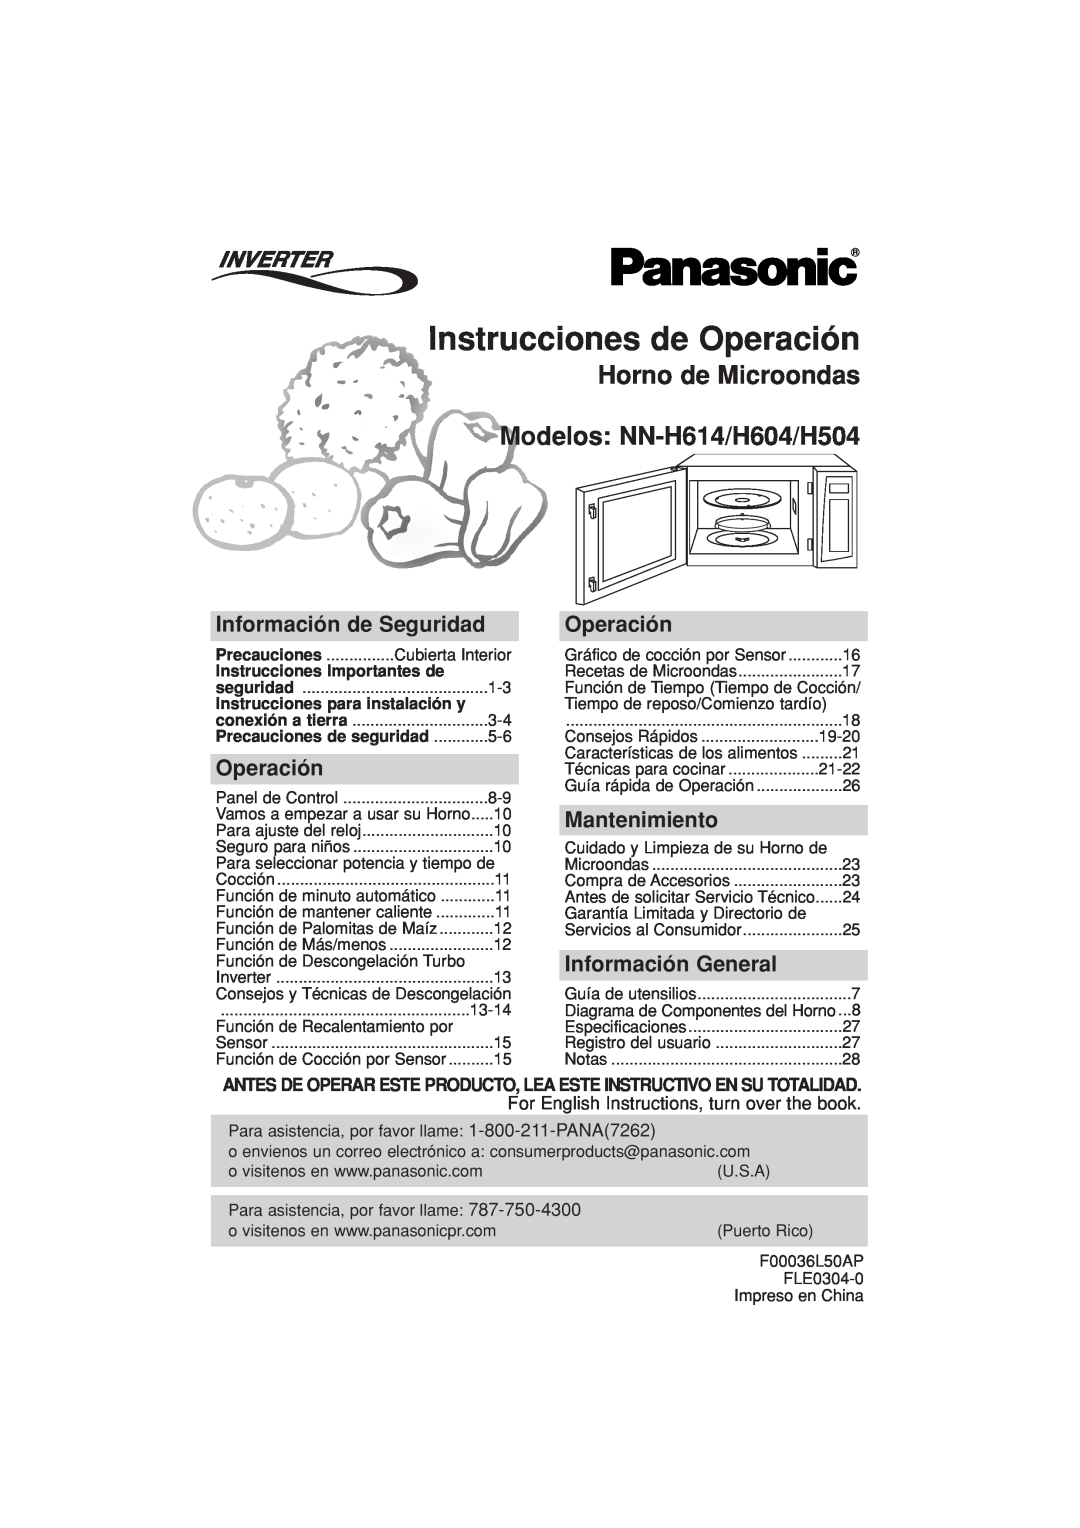 Panasonic NN-H604 Instrucciones de Operación, Horno de Microondas Modelos: NN-H614/H604/H504, Información de Seguridad 